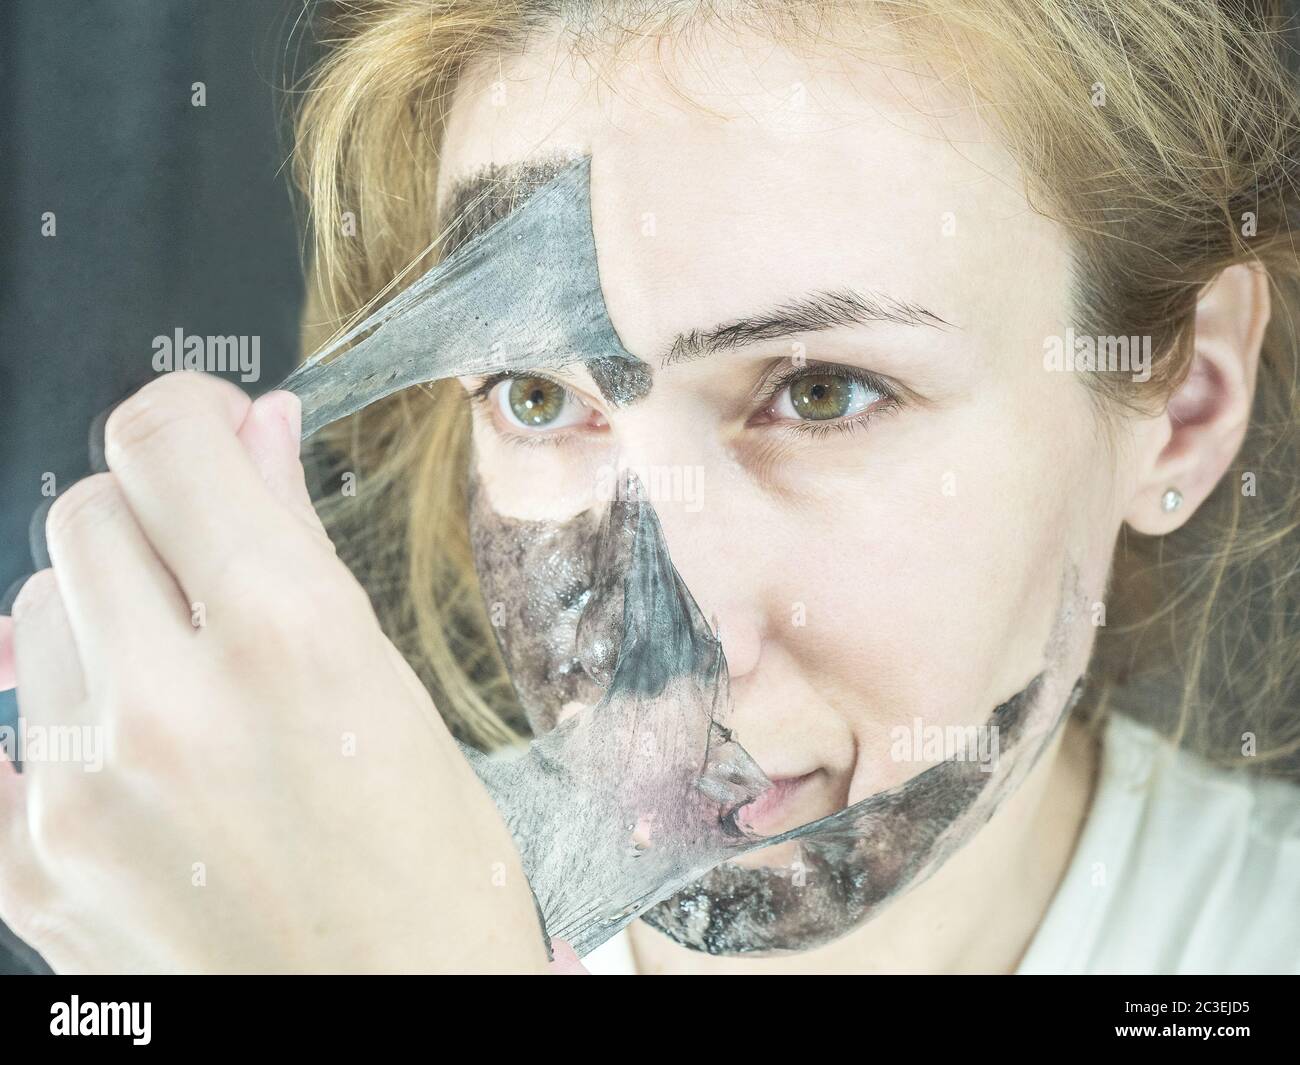 Blonde Mädchen hebt aus dem Gesicht schwarz dünne transparente Maske, um  Poren zu reinigen Stockfotografie - Alamy